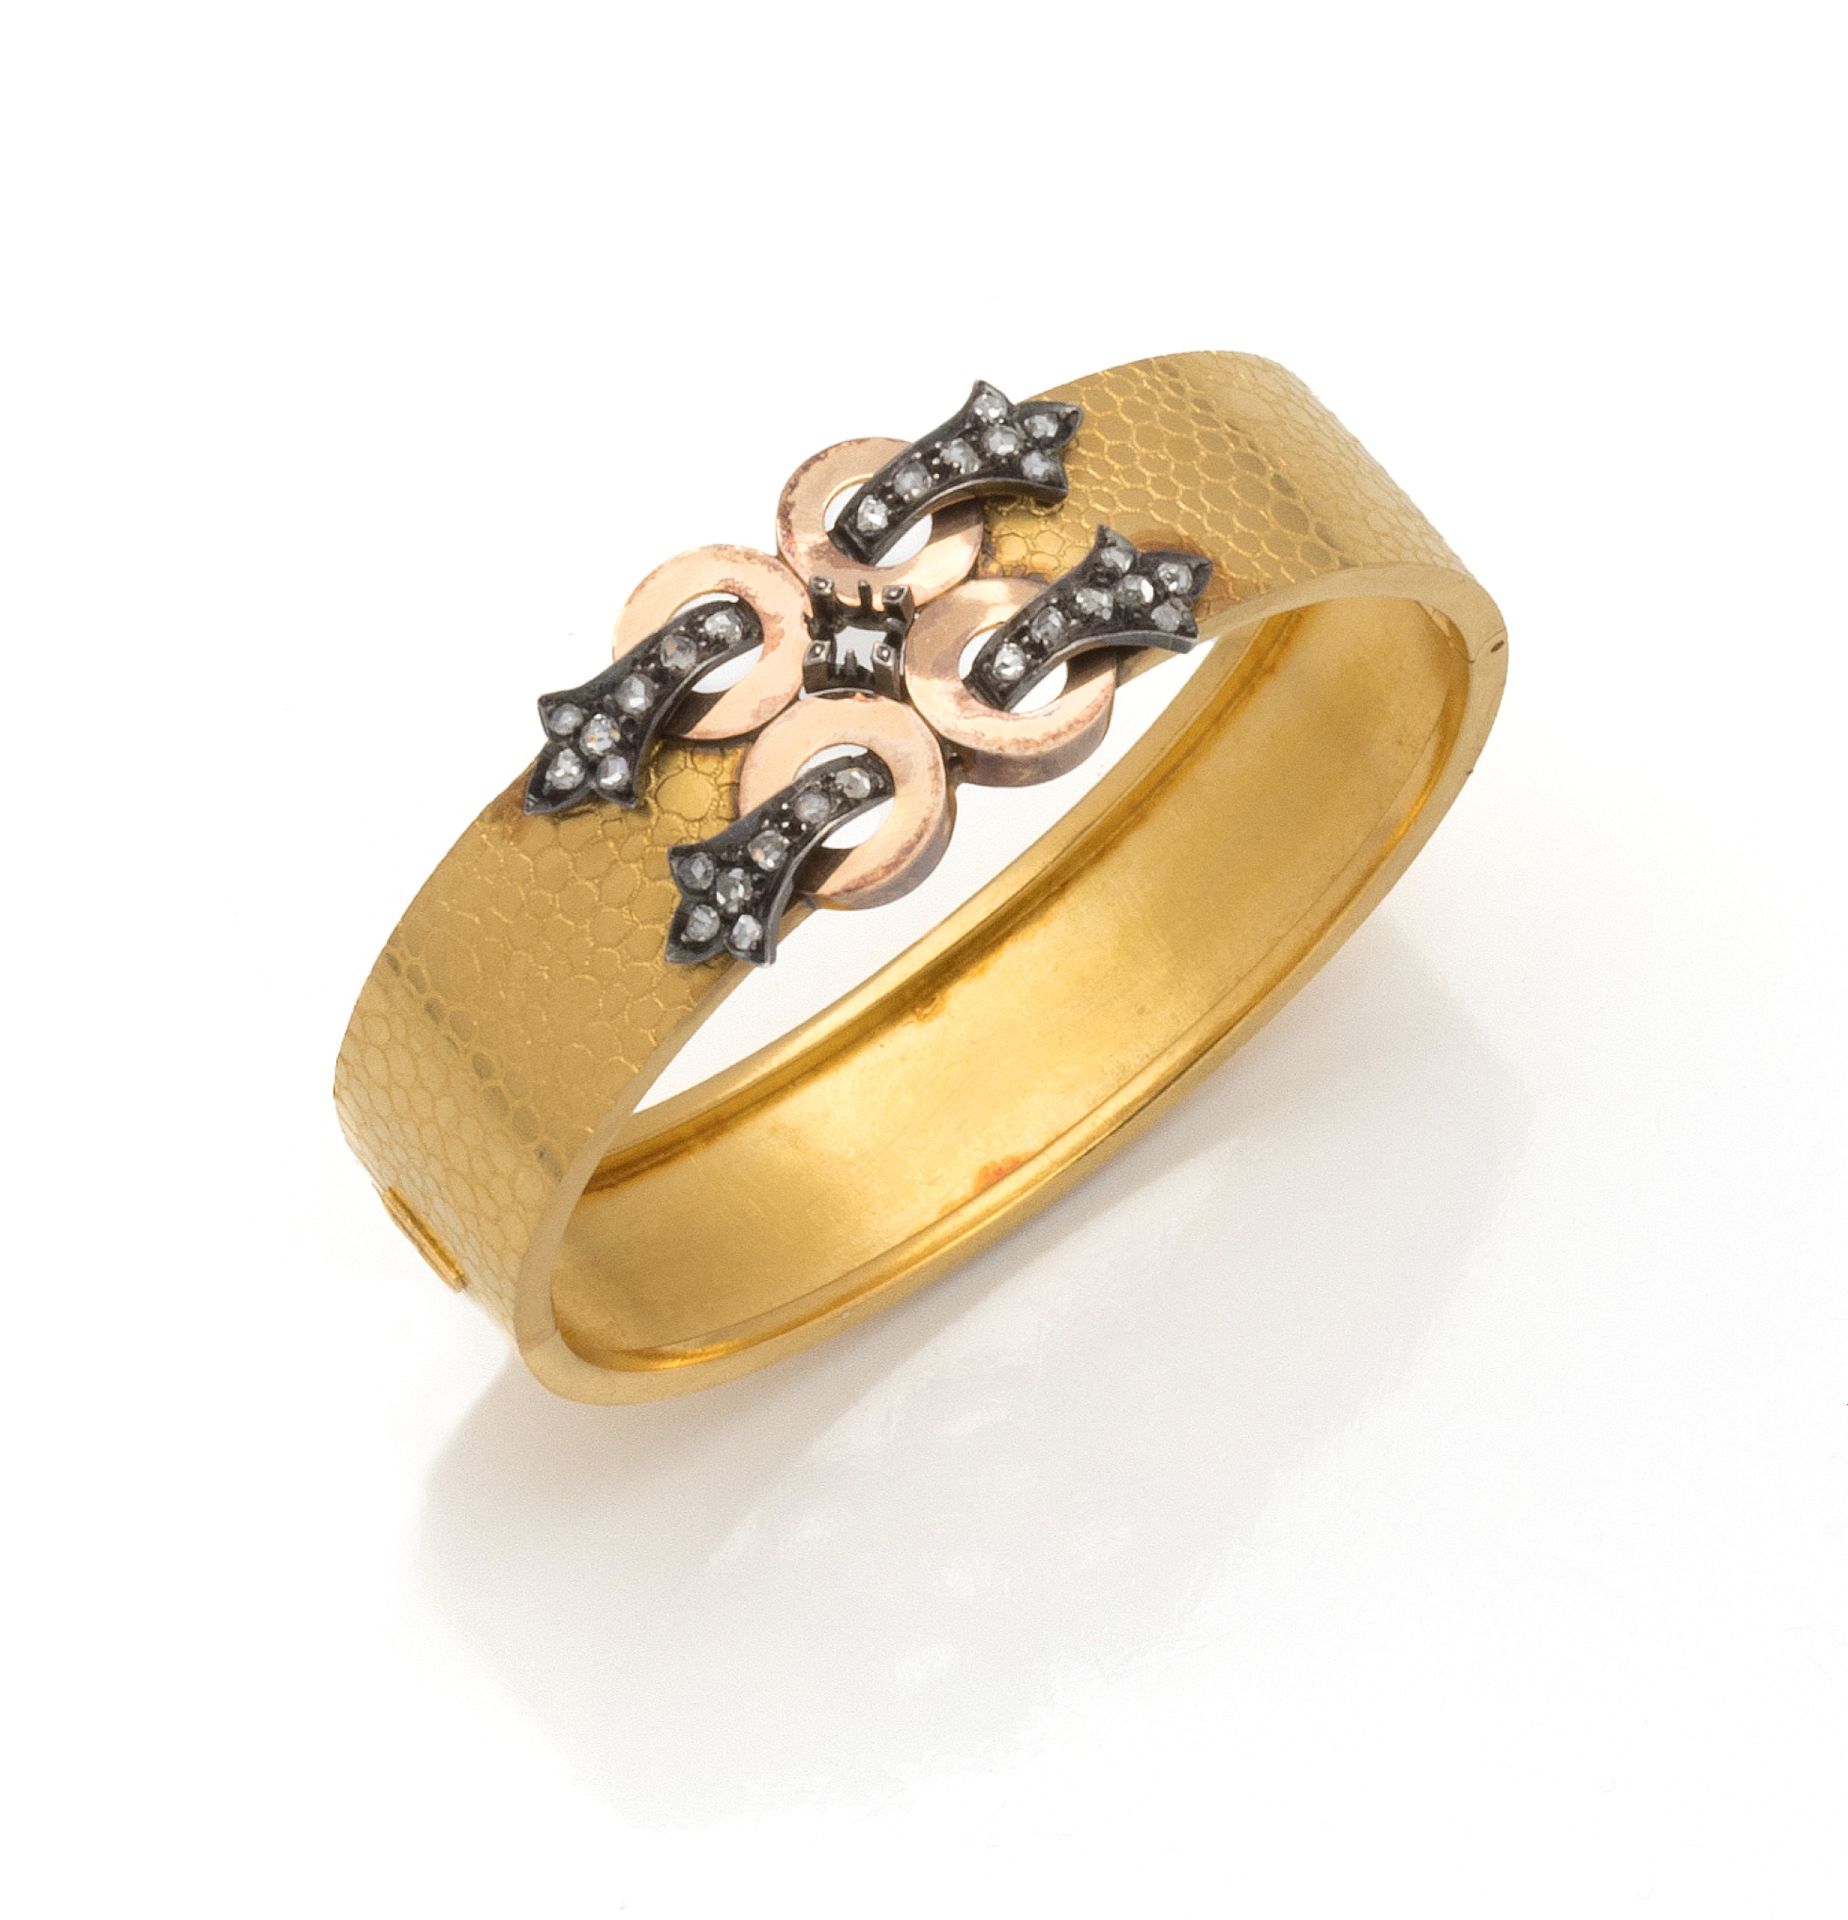 Null 18K（750/1000）黄金和玫瑰金以及银（800/1000）刚性手镯的造型，皮带上装饰着双圆扣，上面镶嵌着玫瑰切割钻石。

带安全链的棘轮扣。

&hellip;